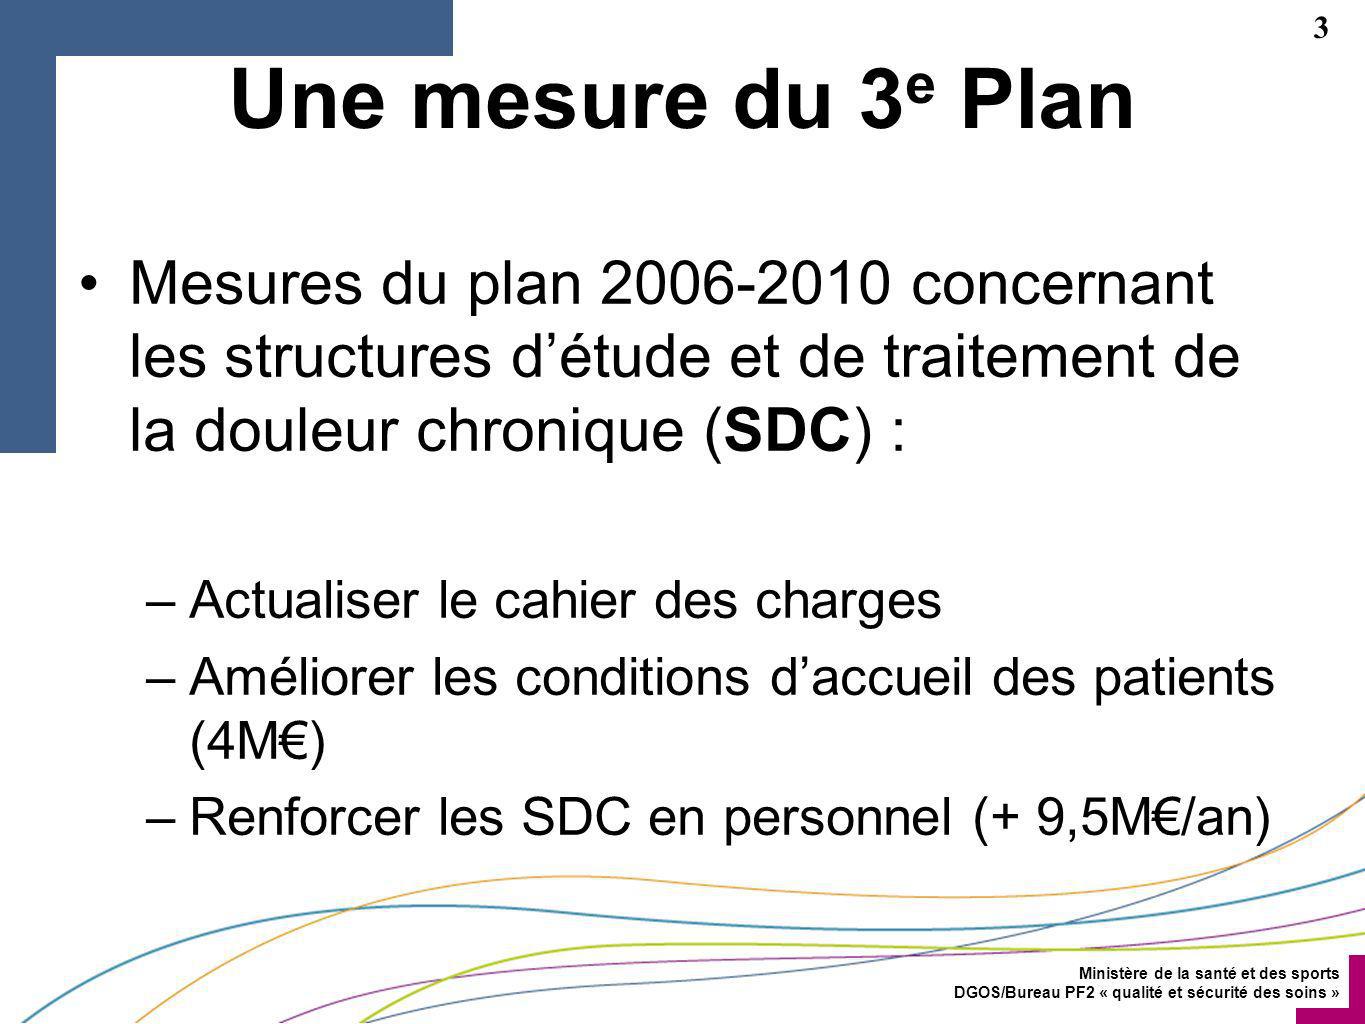 Une mesure du 3e Plan Mesures du plan concernant les structures d’étude et de traitement de la douleur chronique (SDC) :